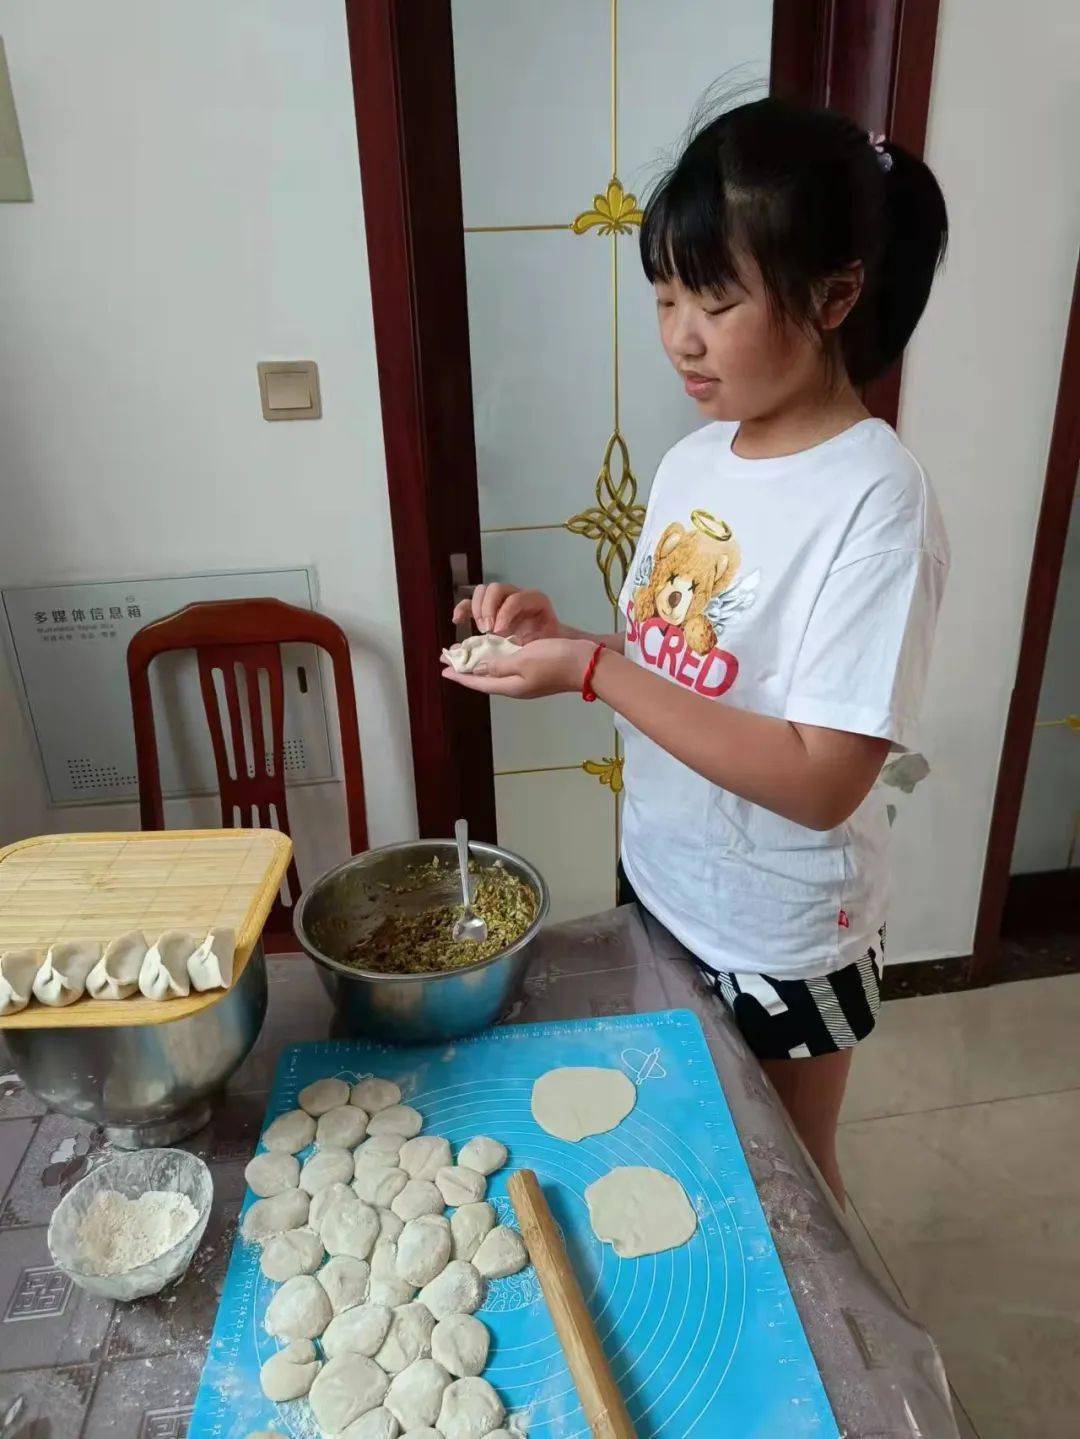 少年强则国强学做饭搞清洁劳动让孩子们的居家生活更有意义